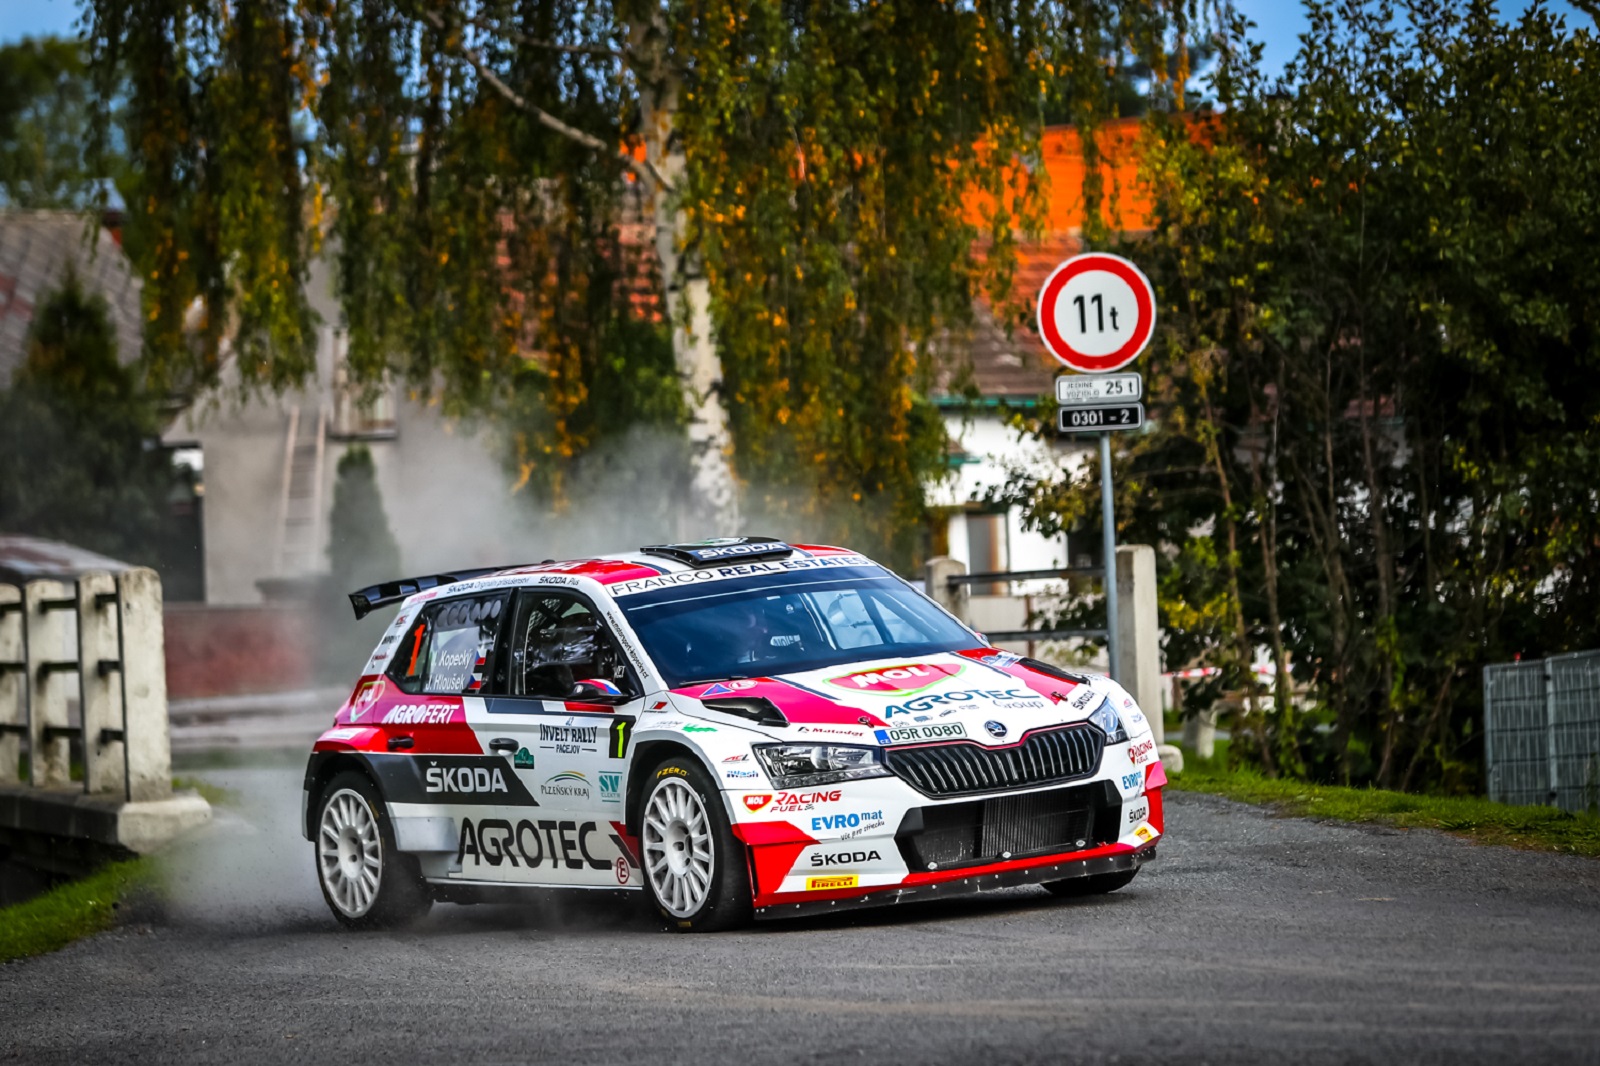 Quest’anno inizia la stagione del Campionato ceco di rally e MOL, in qualità di partner principale, ha preparato una serie di innovazioni.